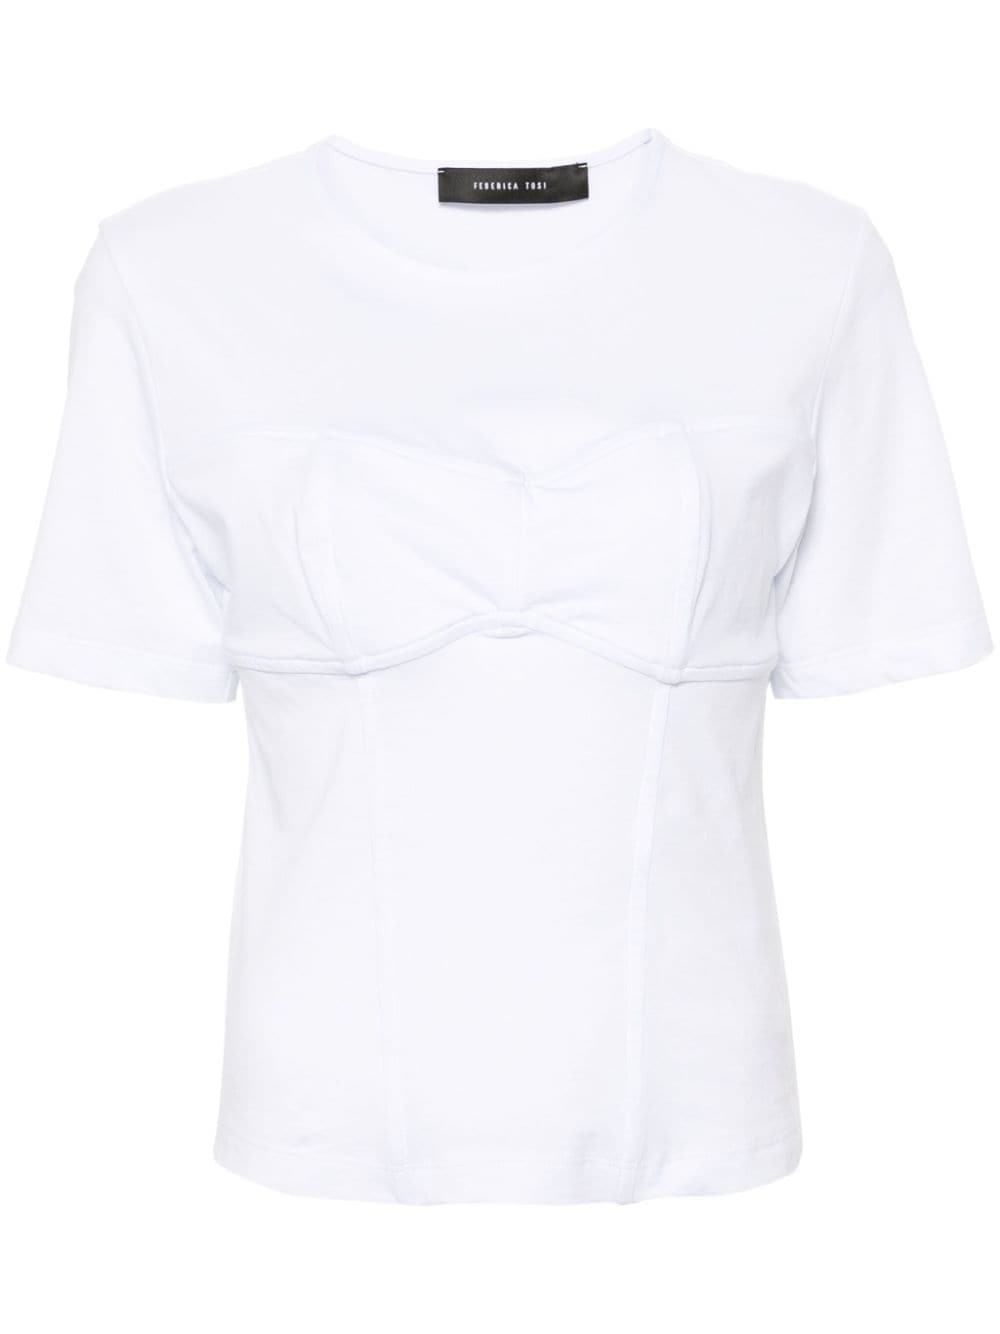 3D-bra cotton T-shirt